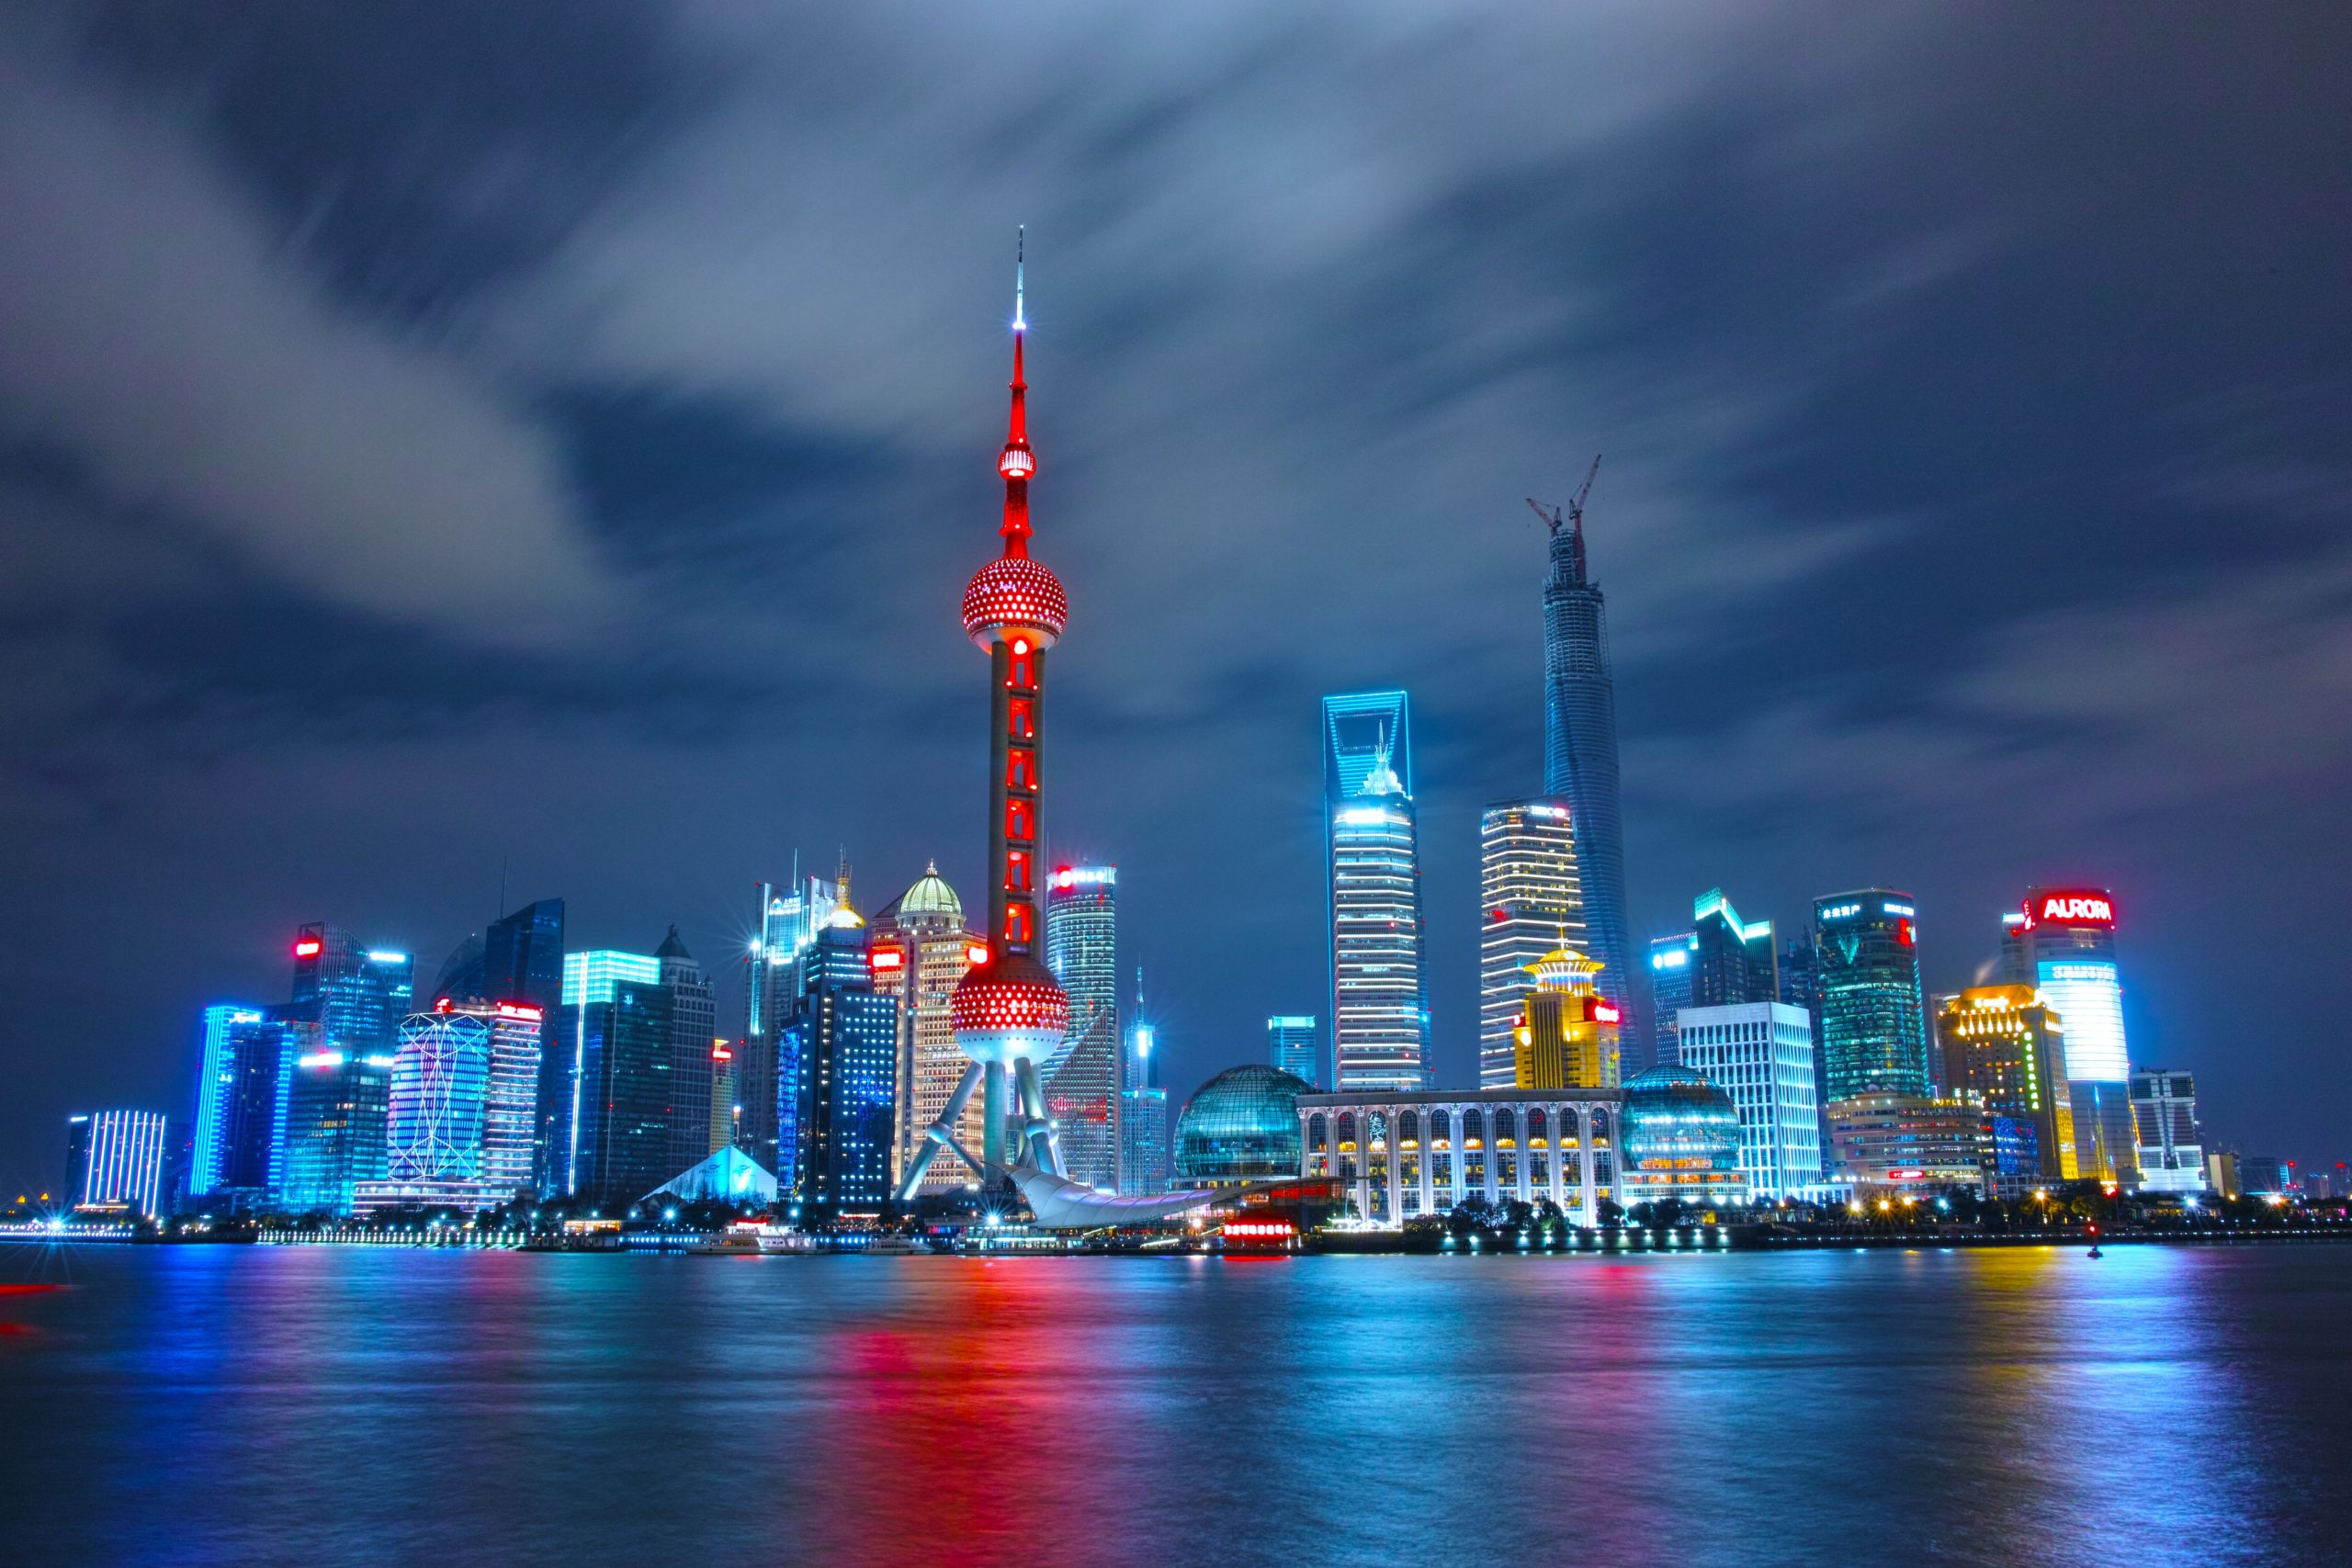 An image of the Shanghai city skyline